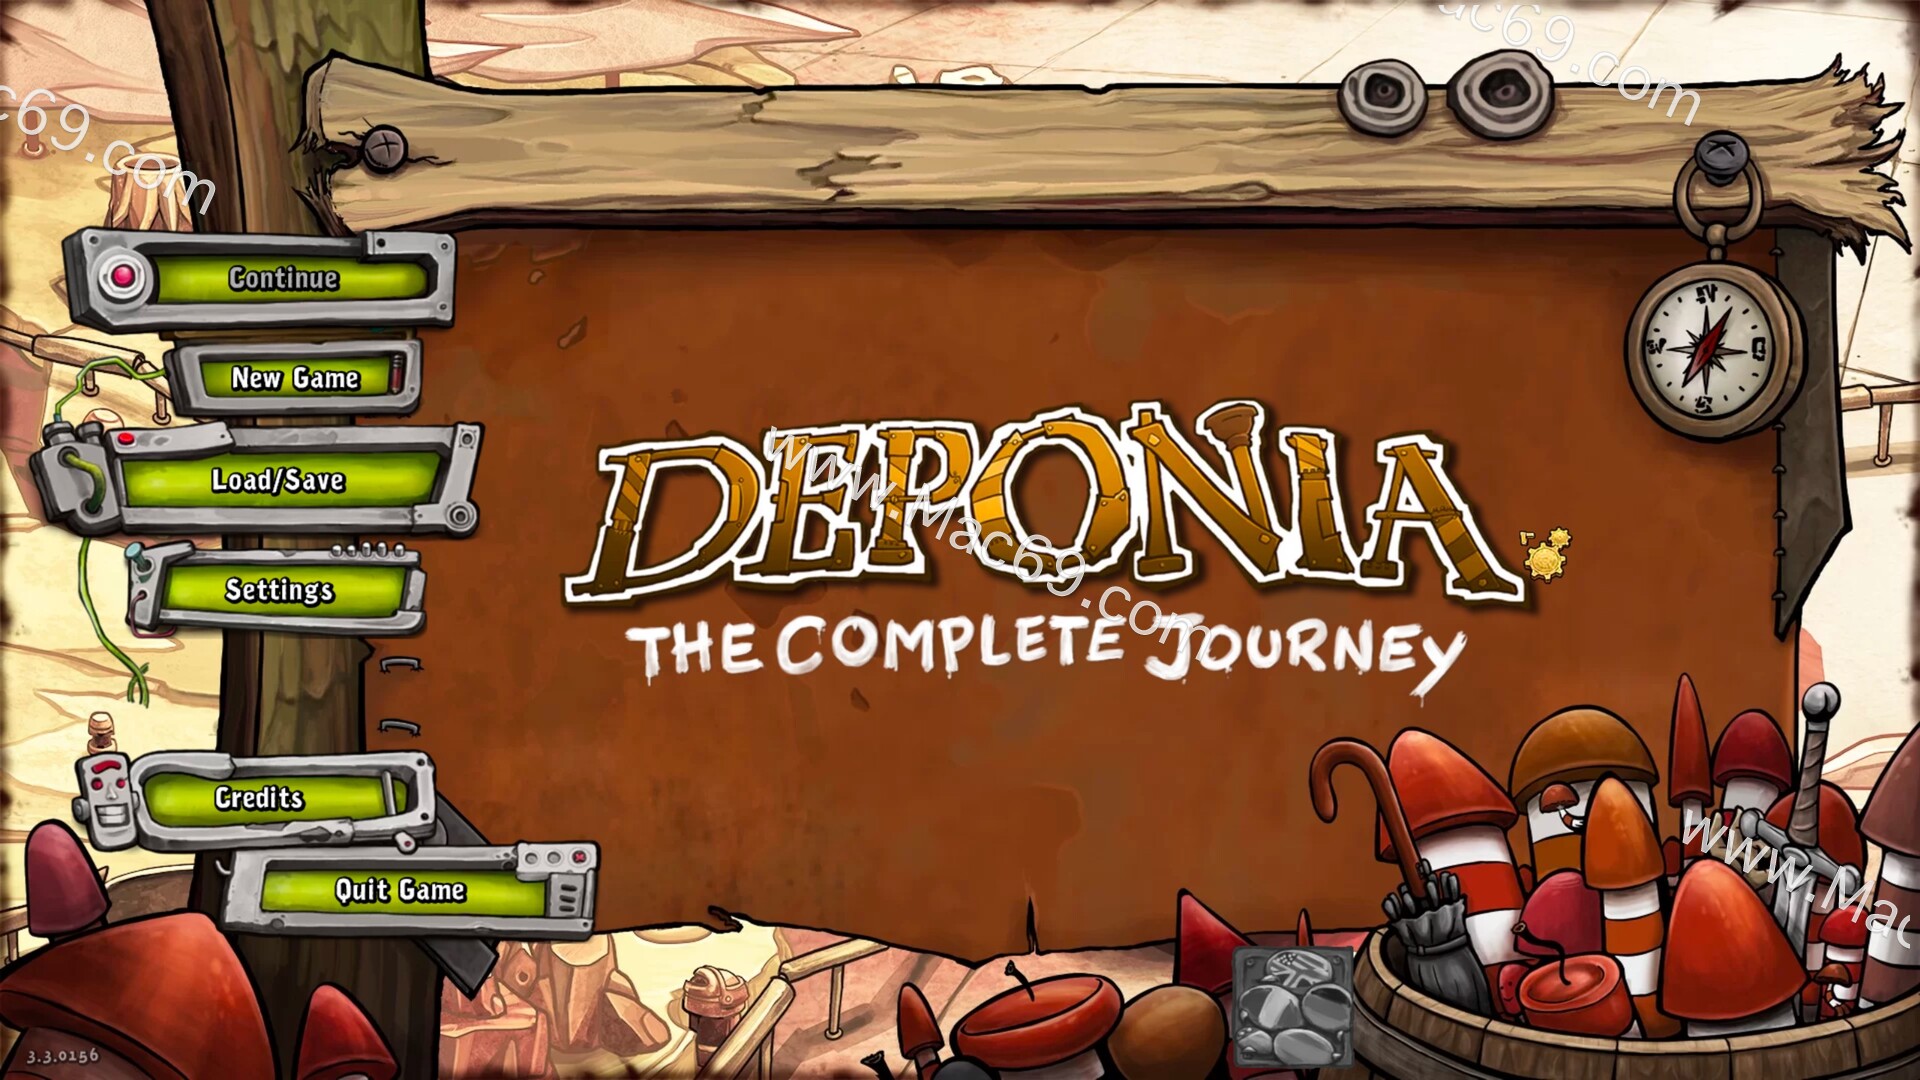 德波尼亚完整旅程Deponia The Complete Journey mac(冒险解谜游戏)